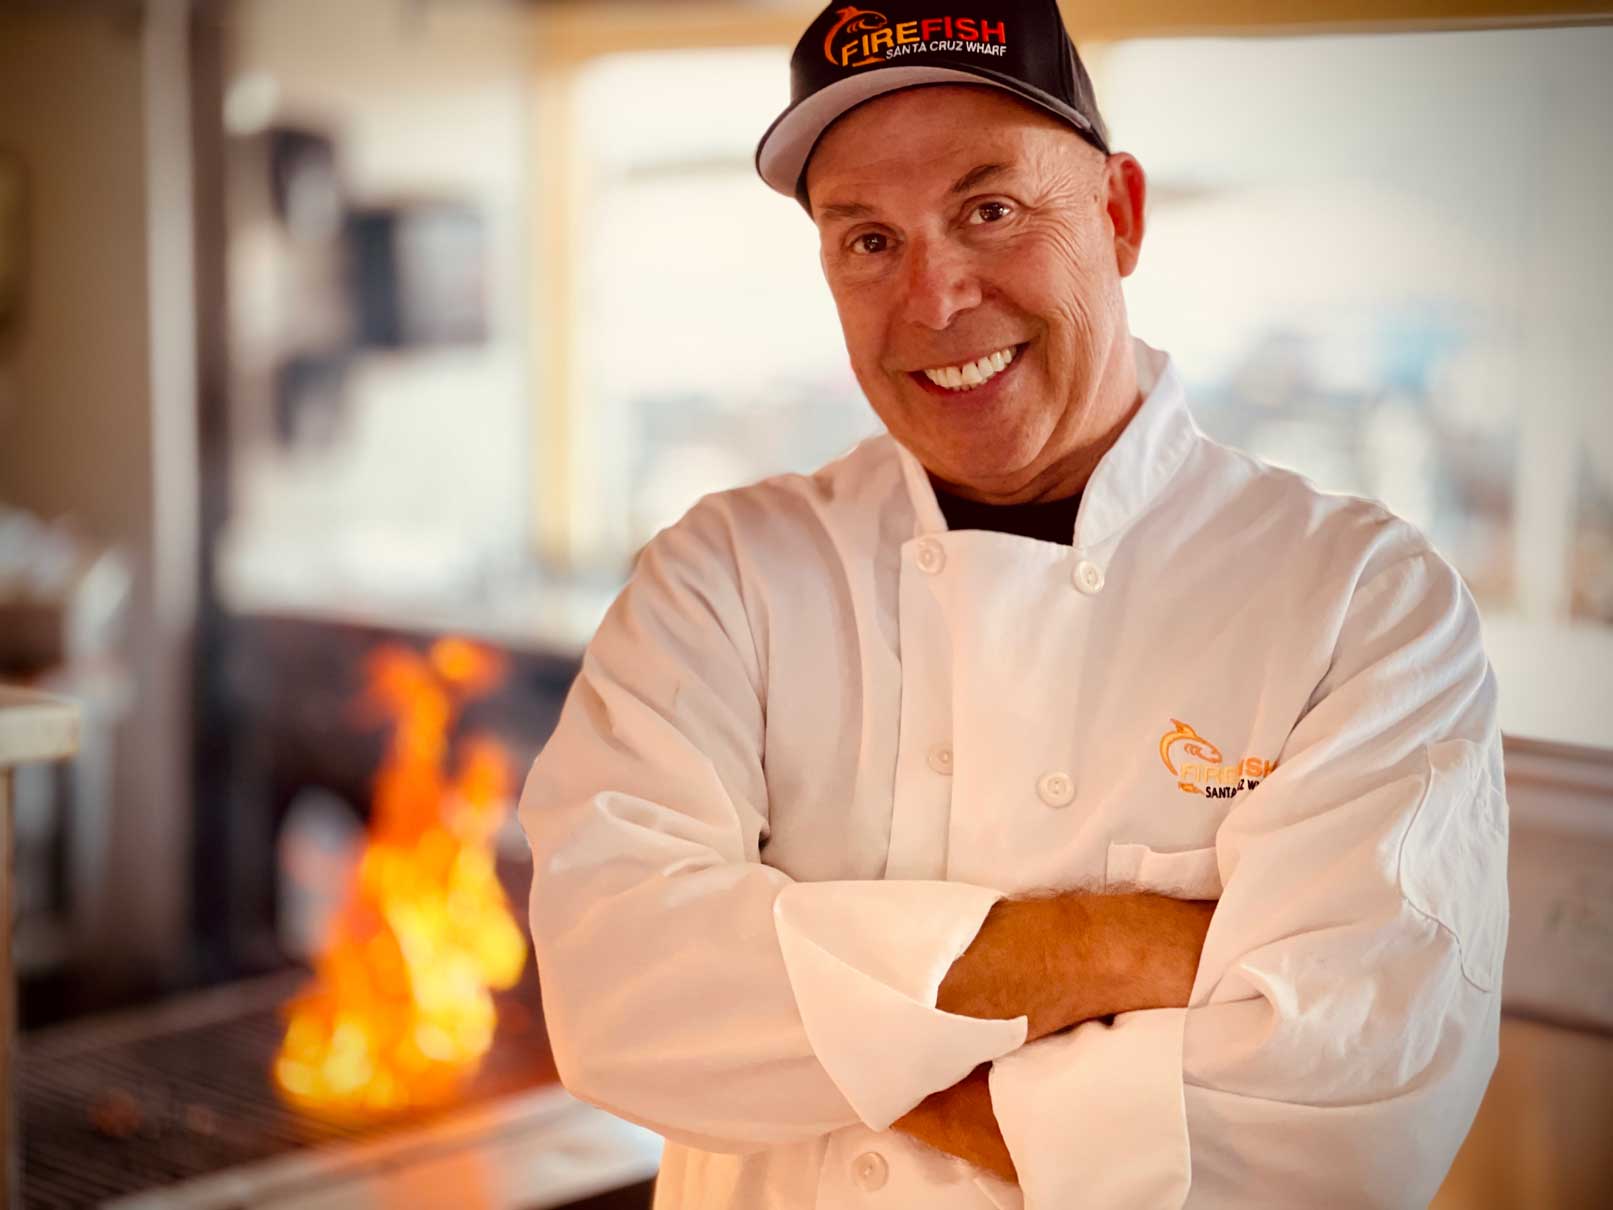 Mark Gilbert Owner of Firefish Grill